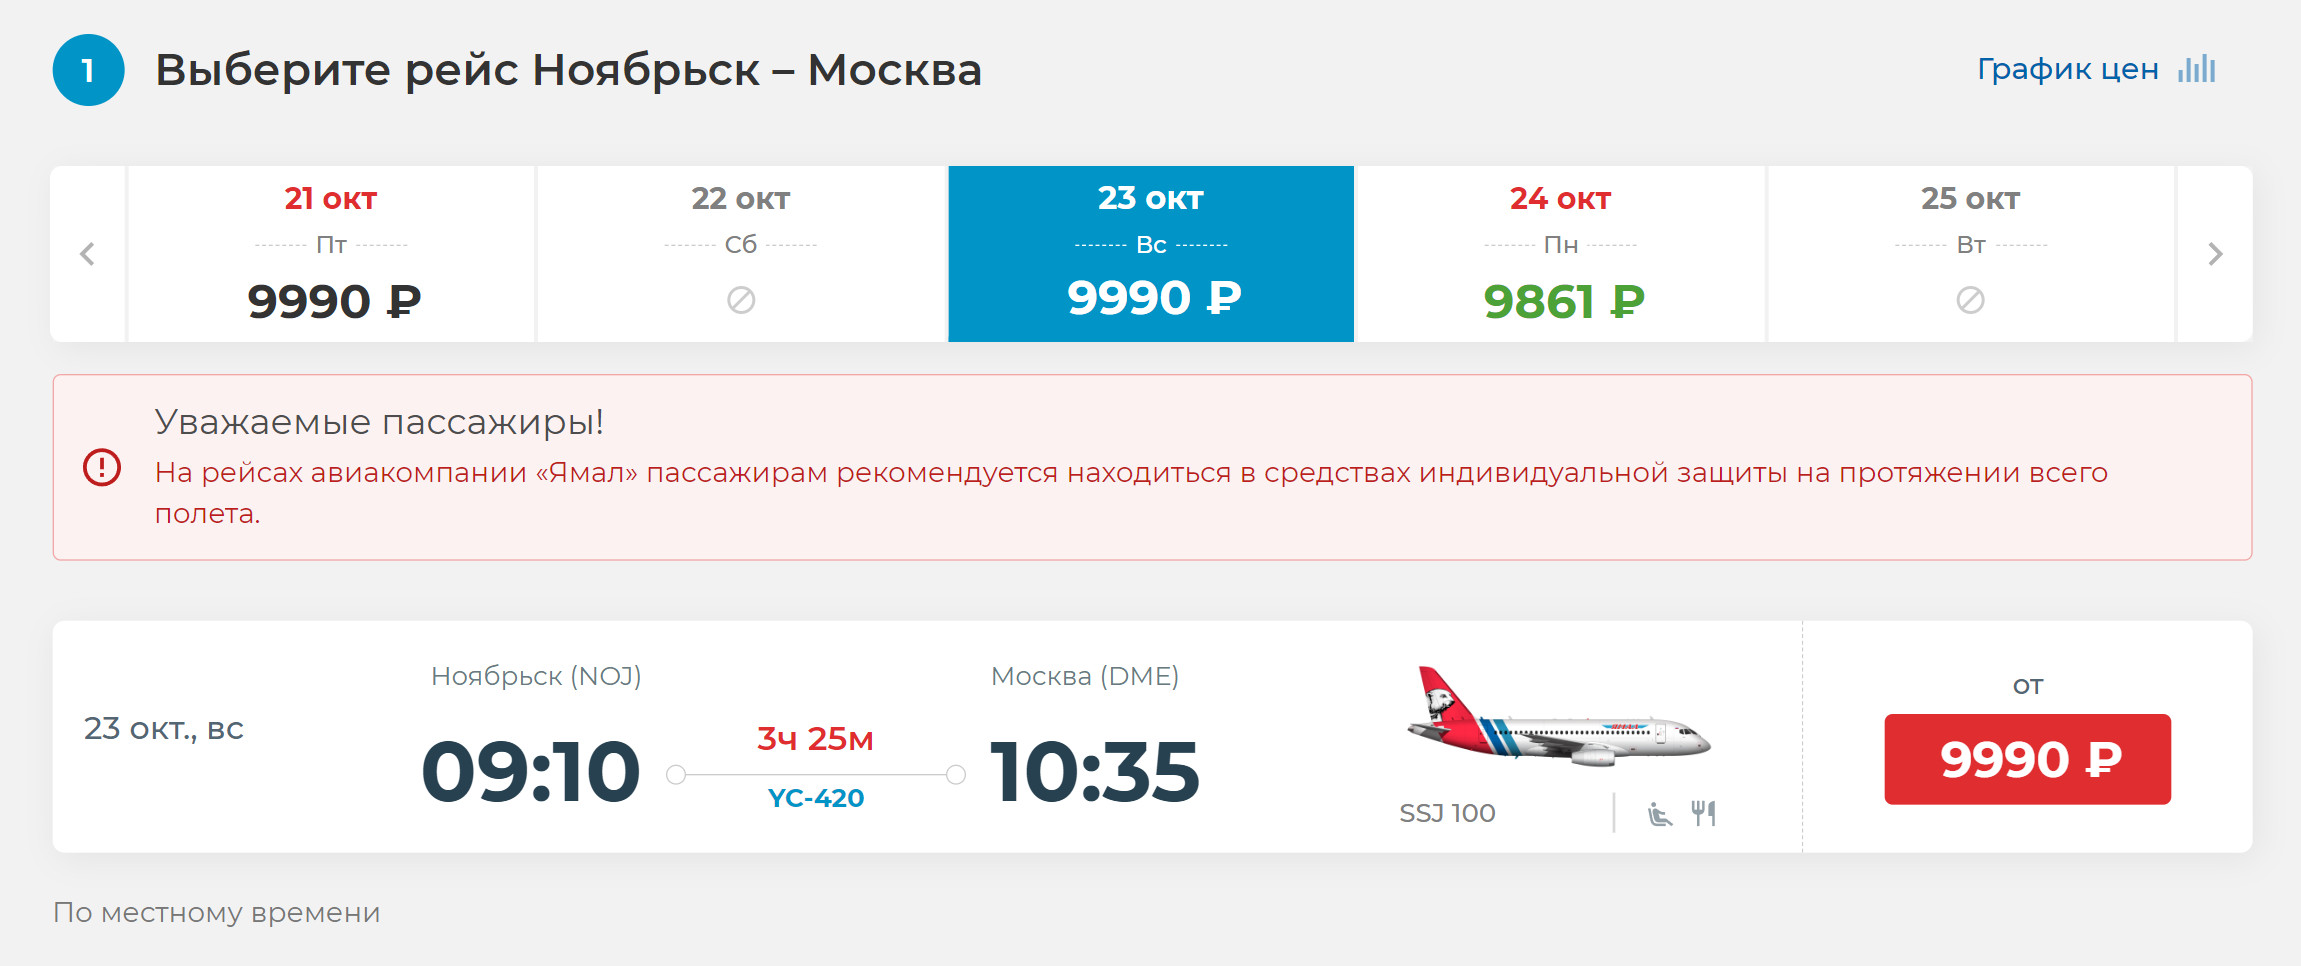 Авиабилеты в Москву стоят одинаково на любой день. Источник: yamal.aero